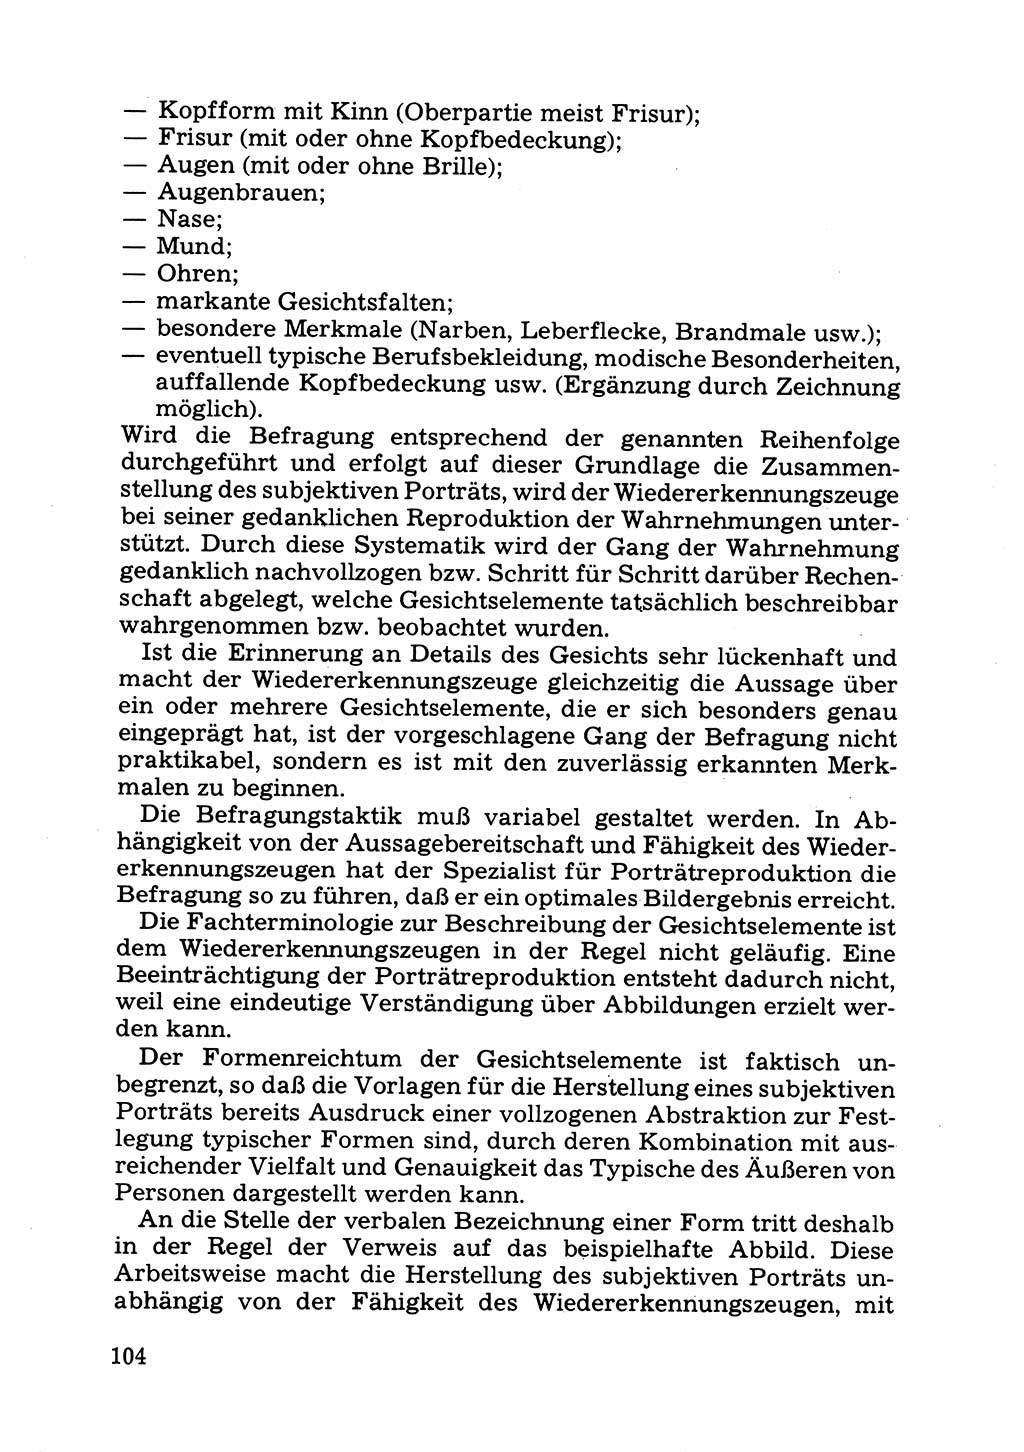 Das subjektive Porträt [Deutsche Demokratische Republik (DDR)] 1981, Seite 104 (Subj. Port. DDR 1981, S. 104)